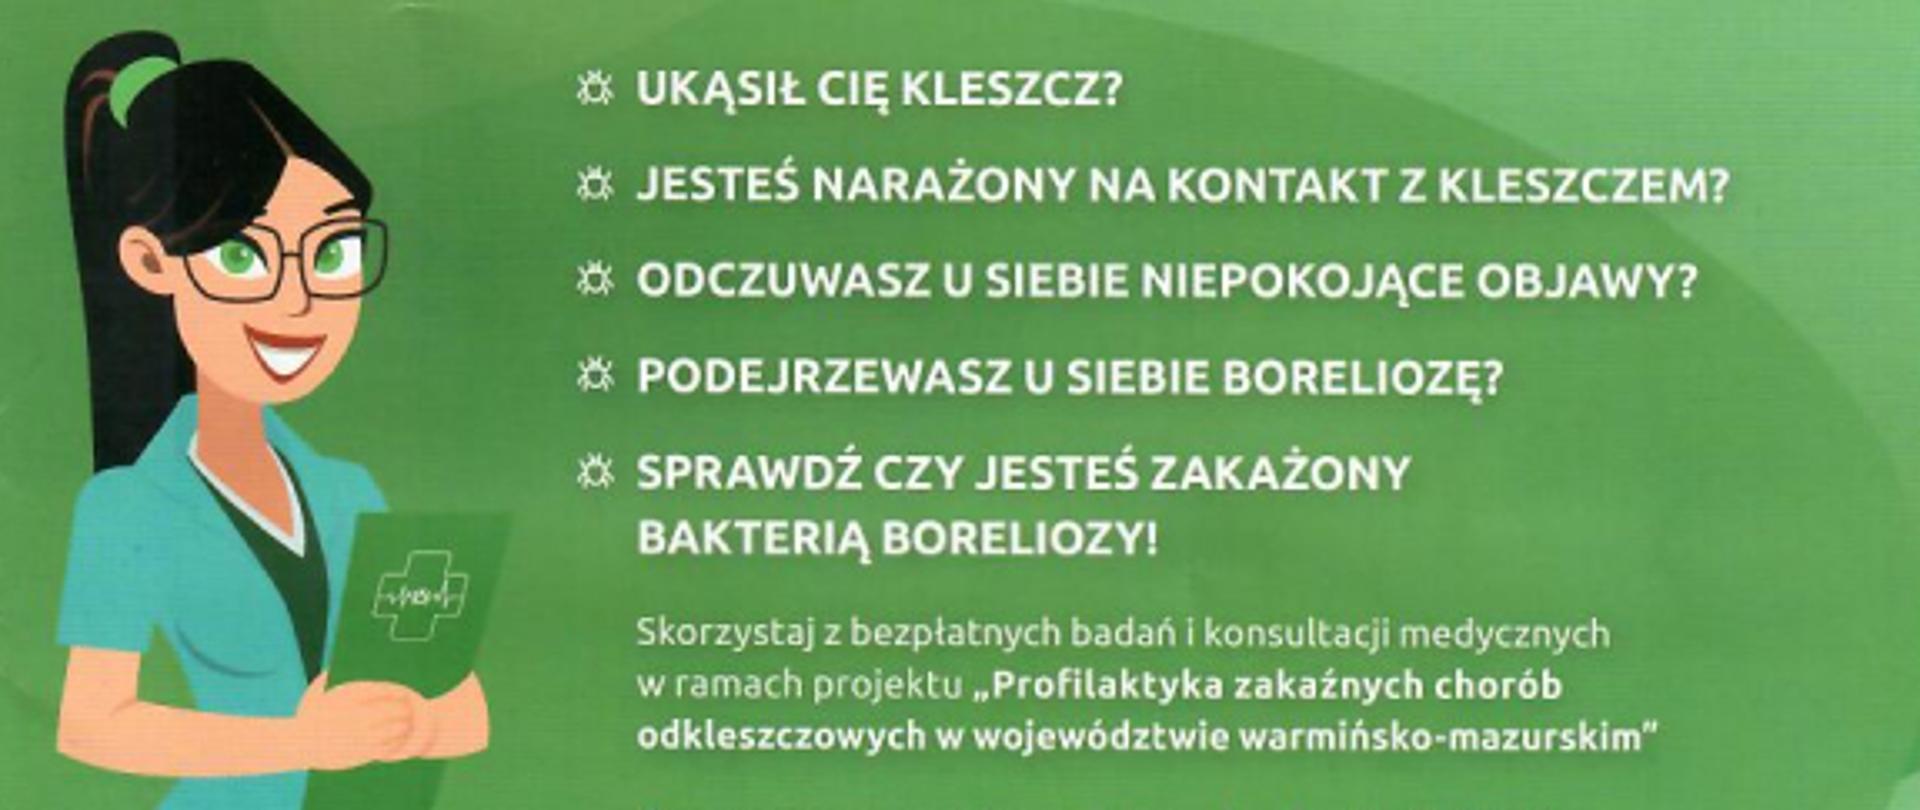 Obraz przedstawia plakat projektu "Profilaktyka zakaźnych chorób odkleszczowych w województwie warmińsko-mazurskim"